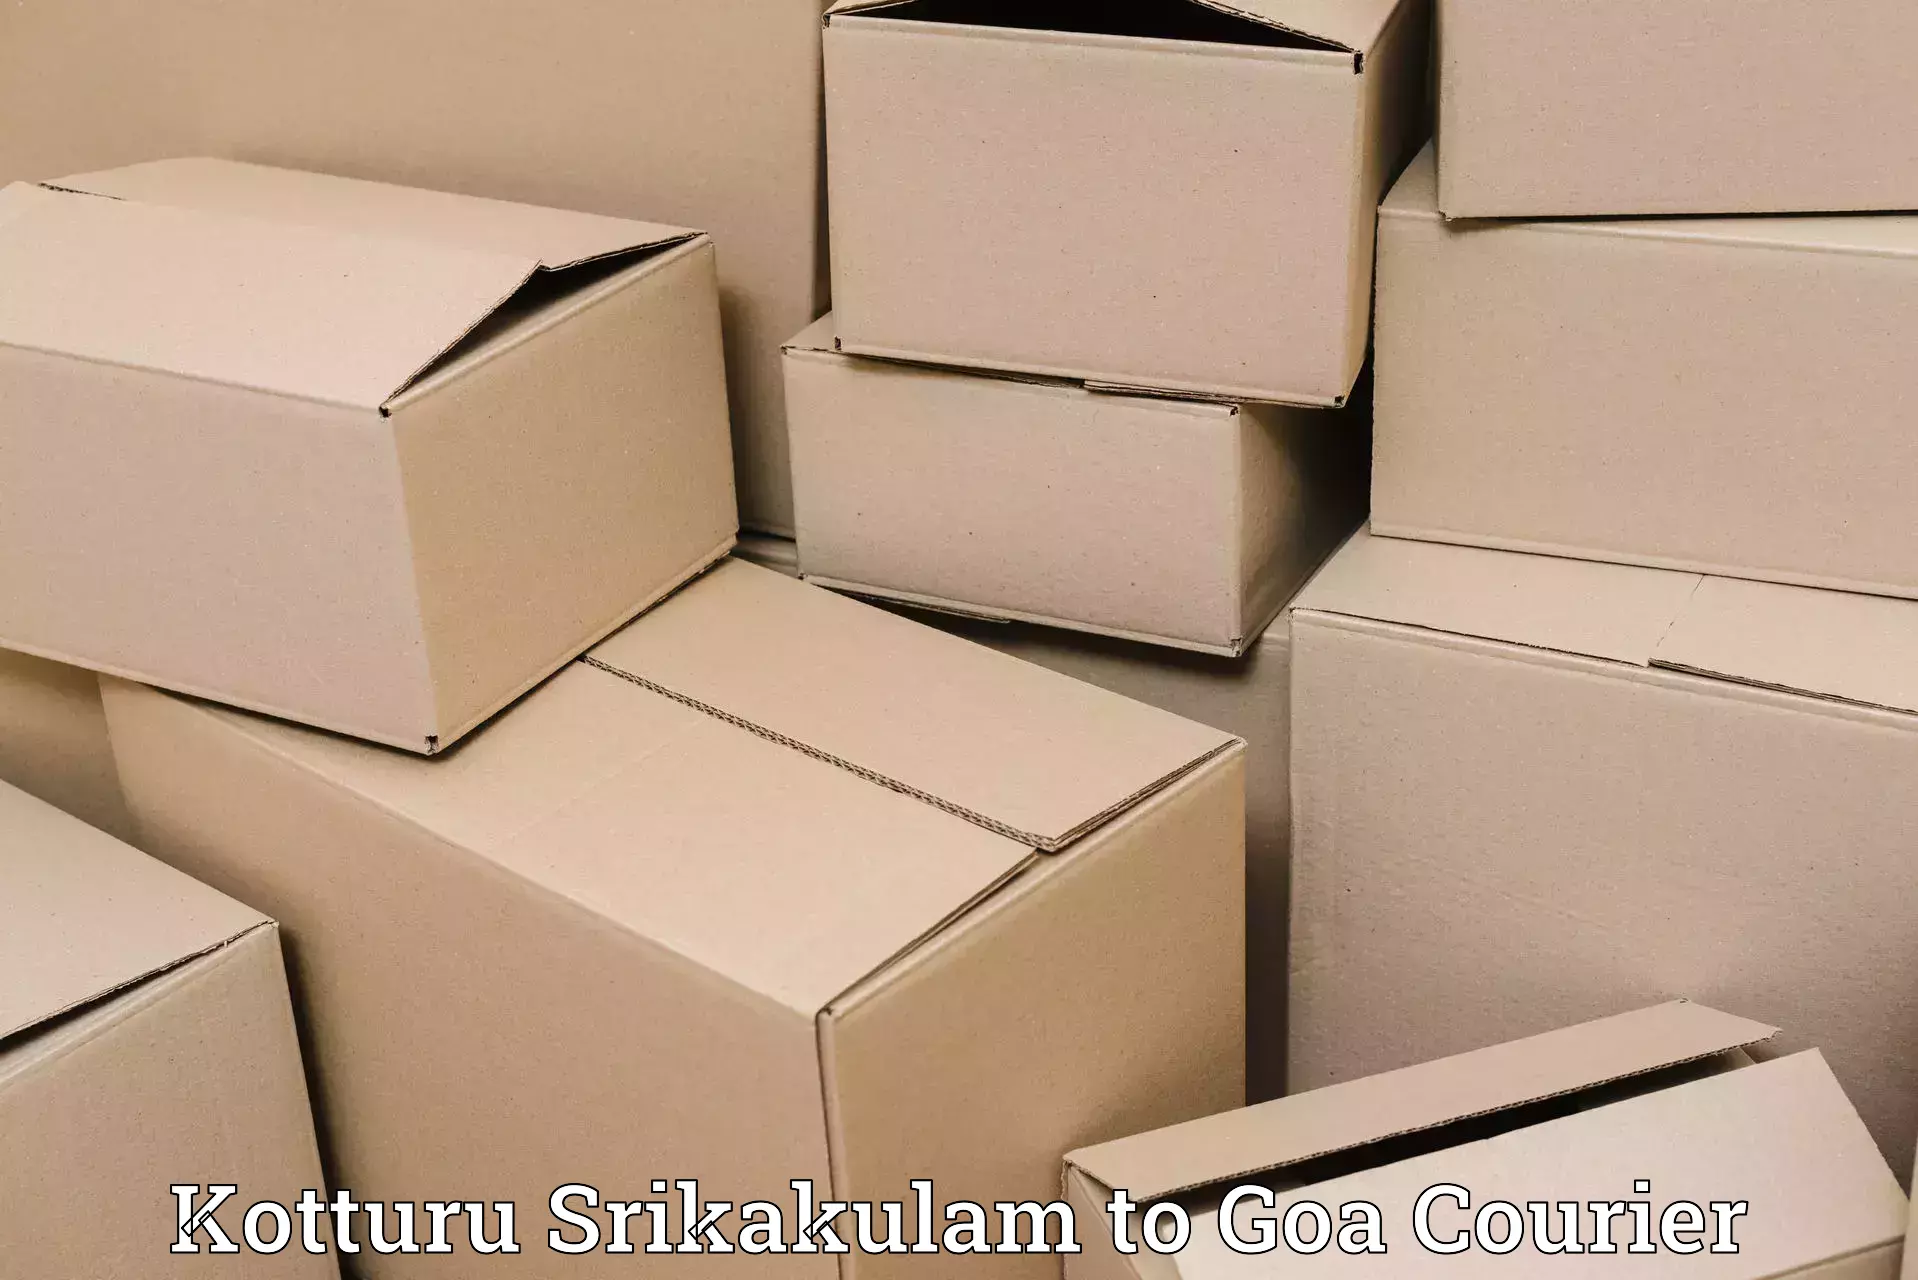 24-hour courier service Kotturu Srikakulam to IIT Goa